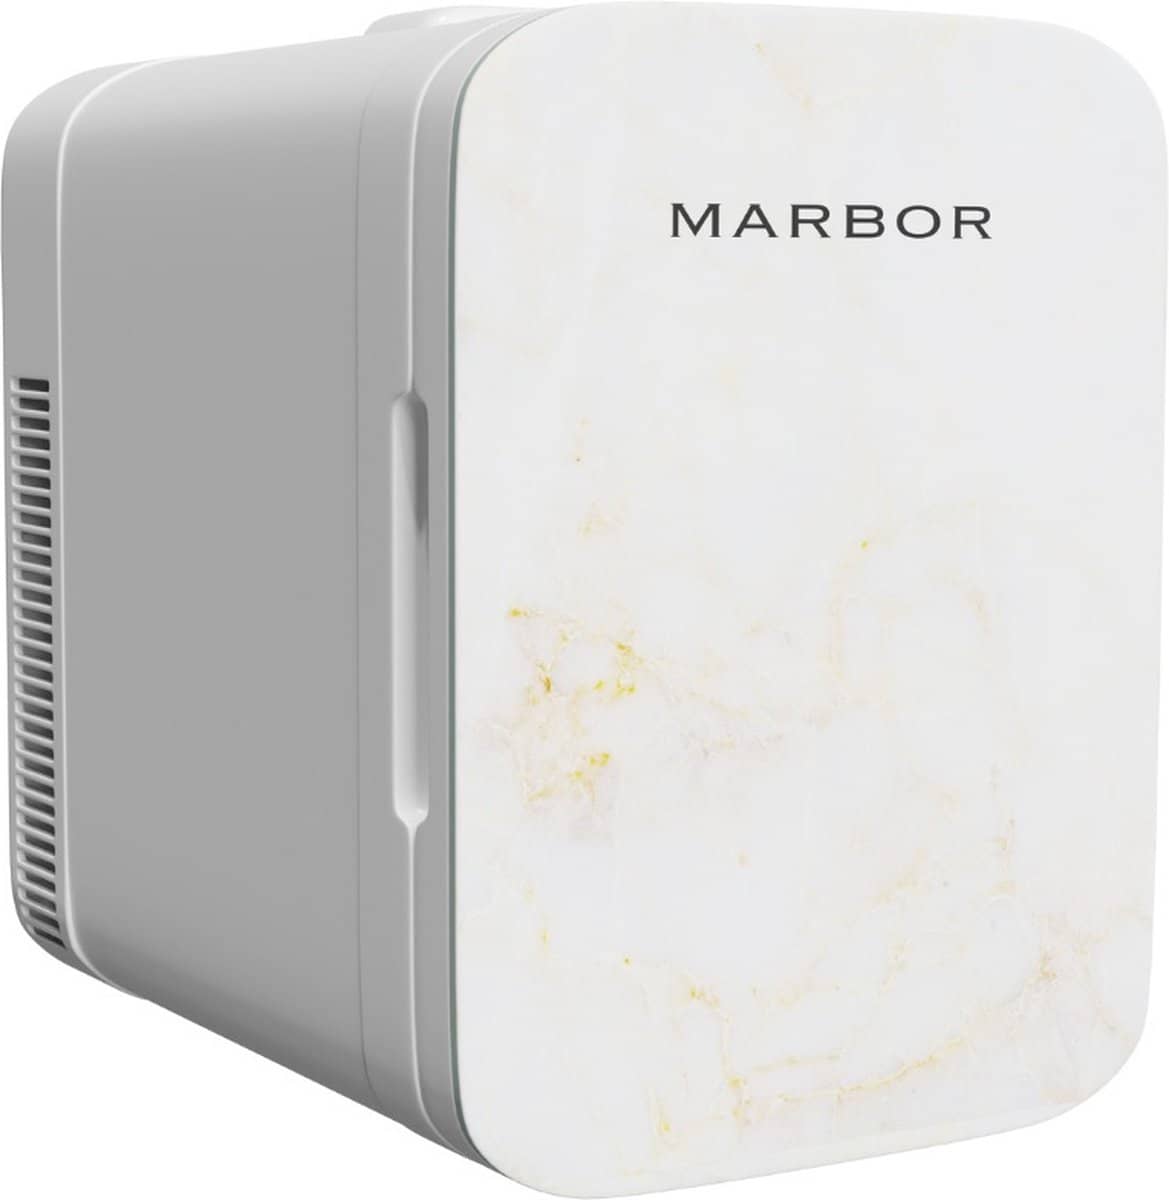 Marbor FW210 Pro – 10L Mini Fridge. Perfect voor beauty producten